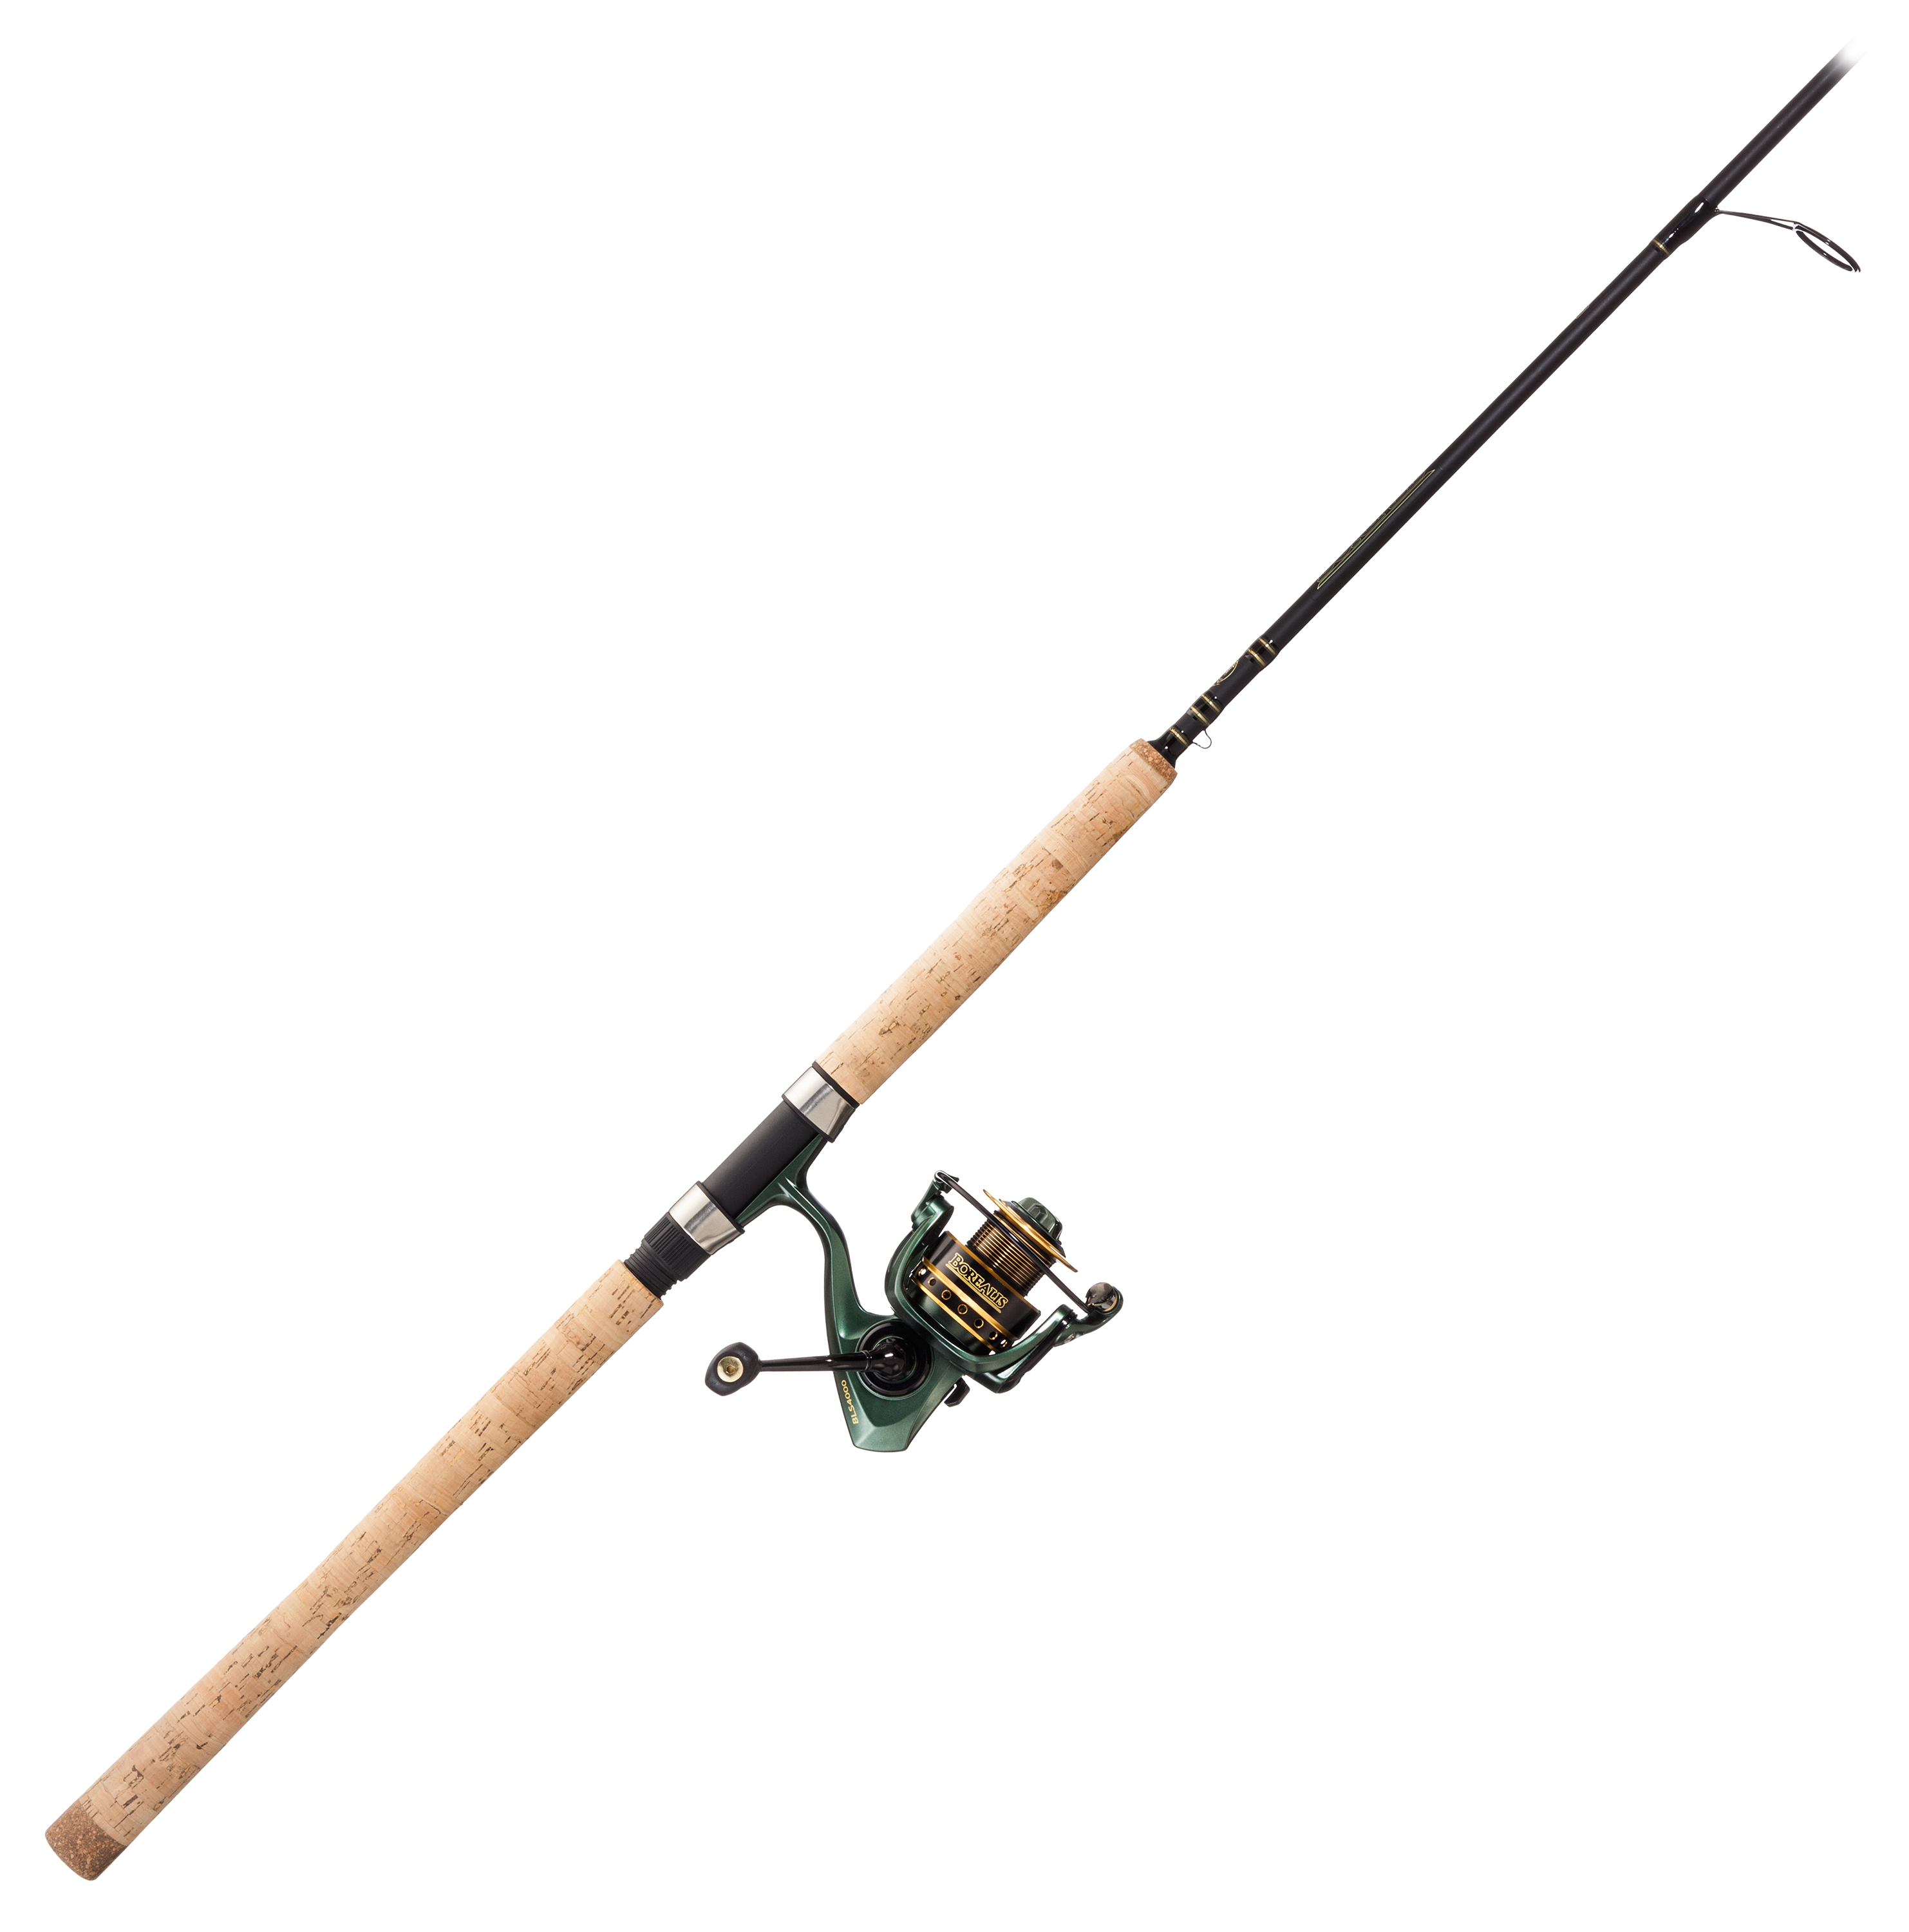 Winter Ice Fishing Rod with Reel Combo Wood Handle Pole Wheel